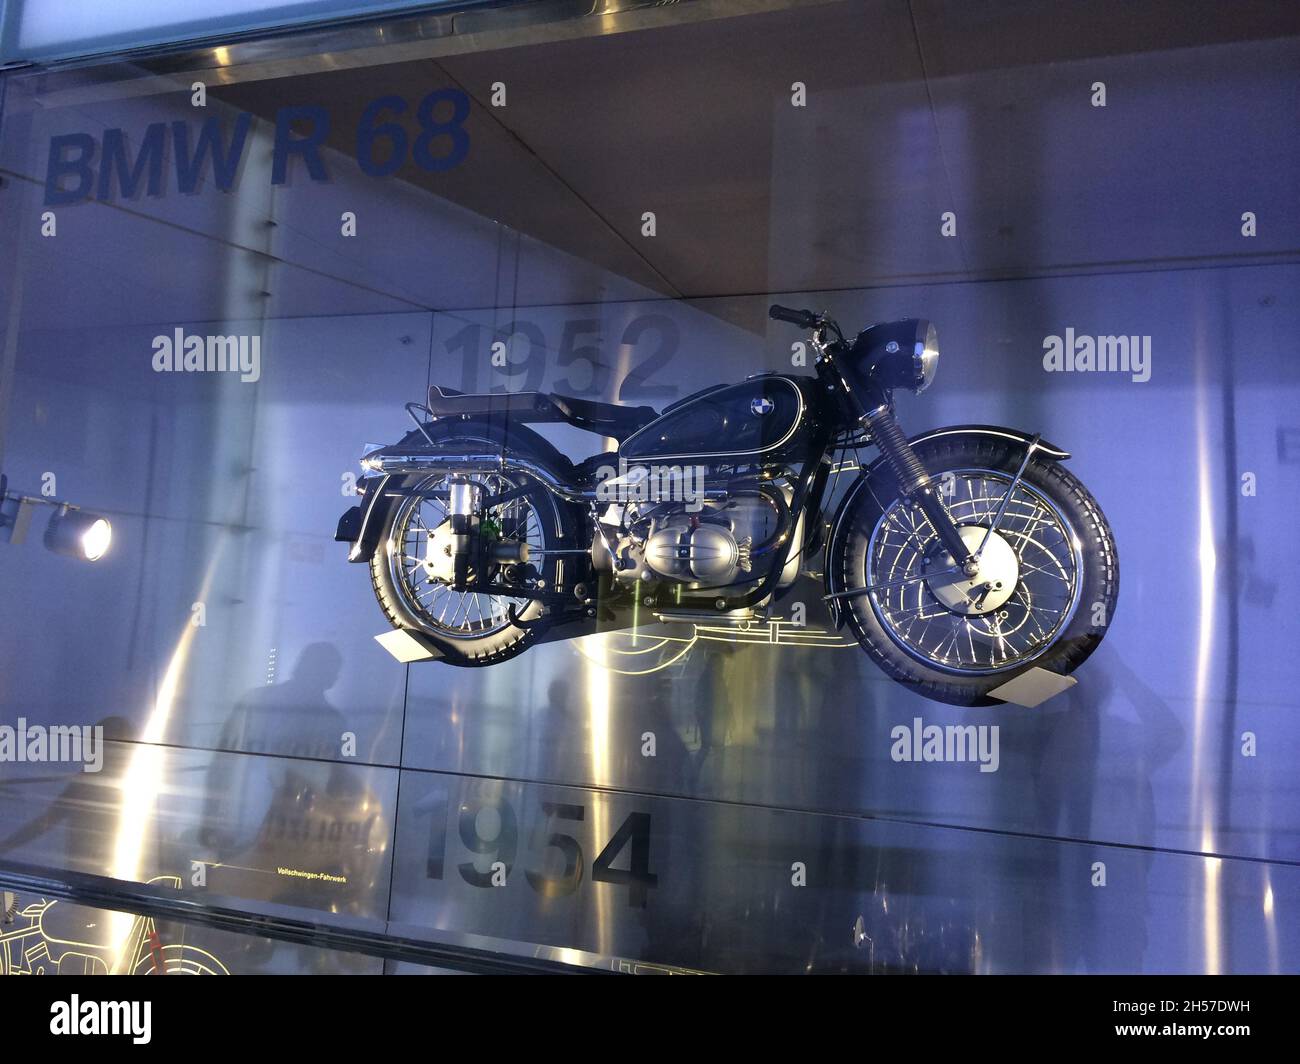 BMW R 68 motocicletta: Anno 1952. Si tratta di una moto sportiva, prodotta dalla BMW dal 1952 al 1954. BMW Museum, Monaco di Baviera, Germania. Foto Stock